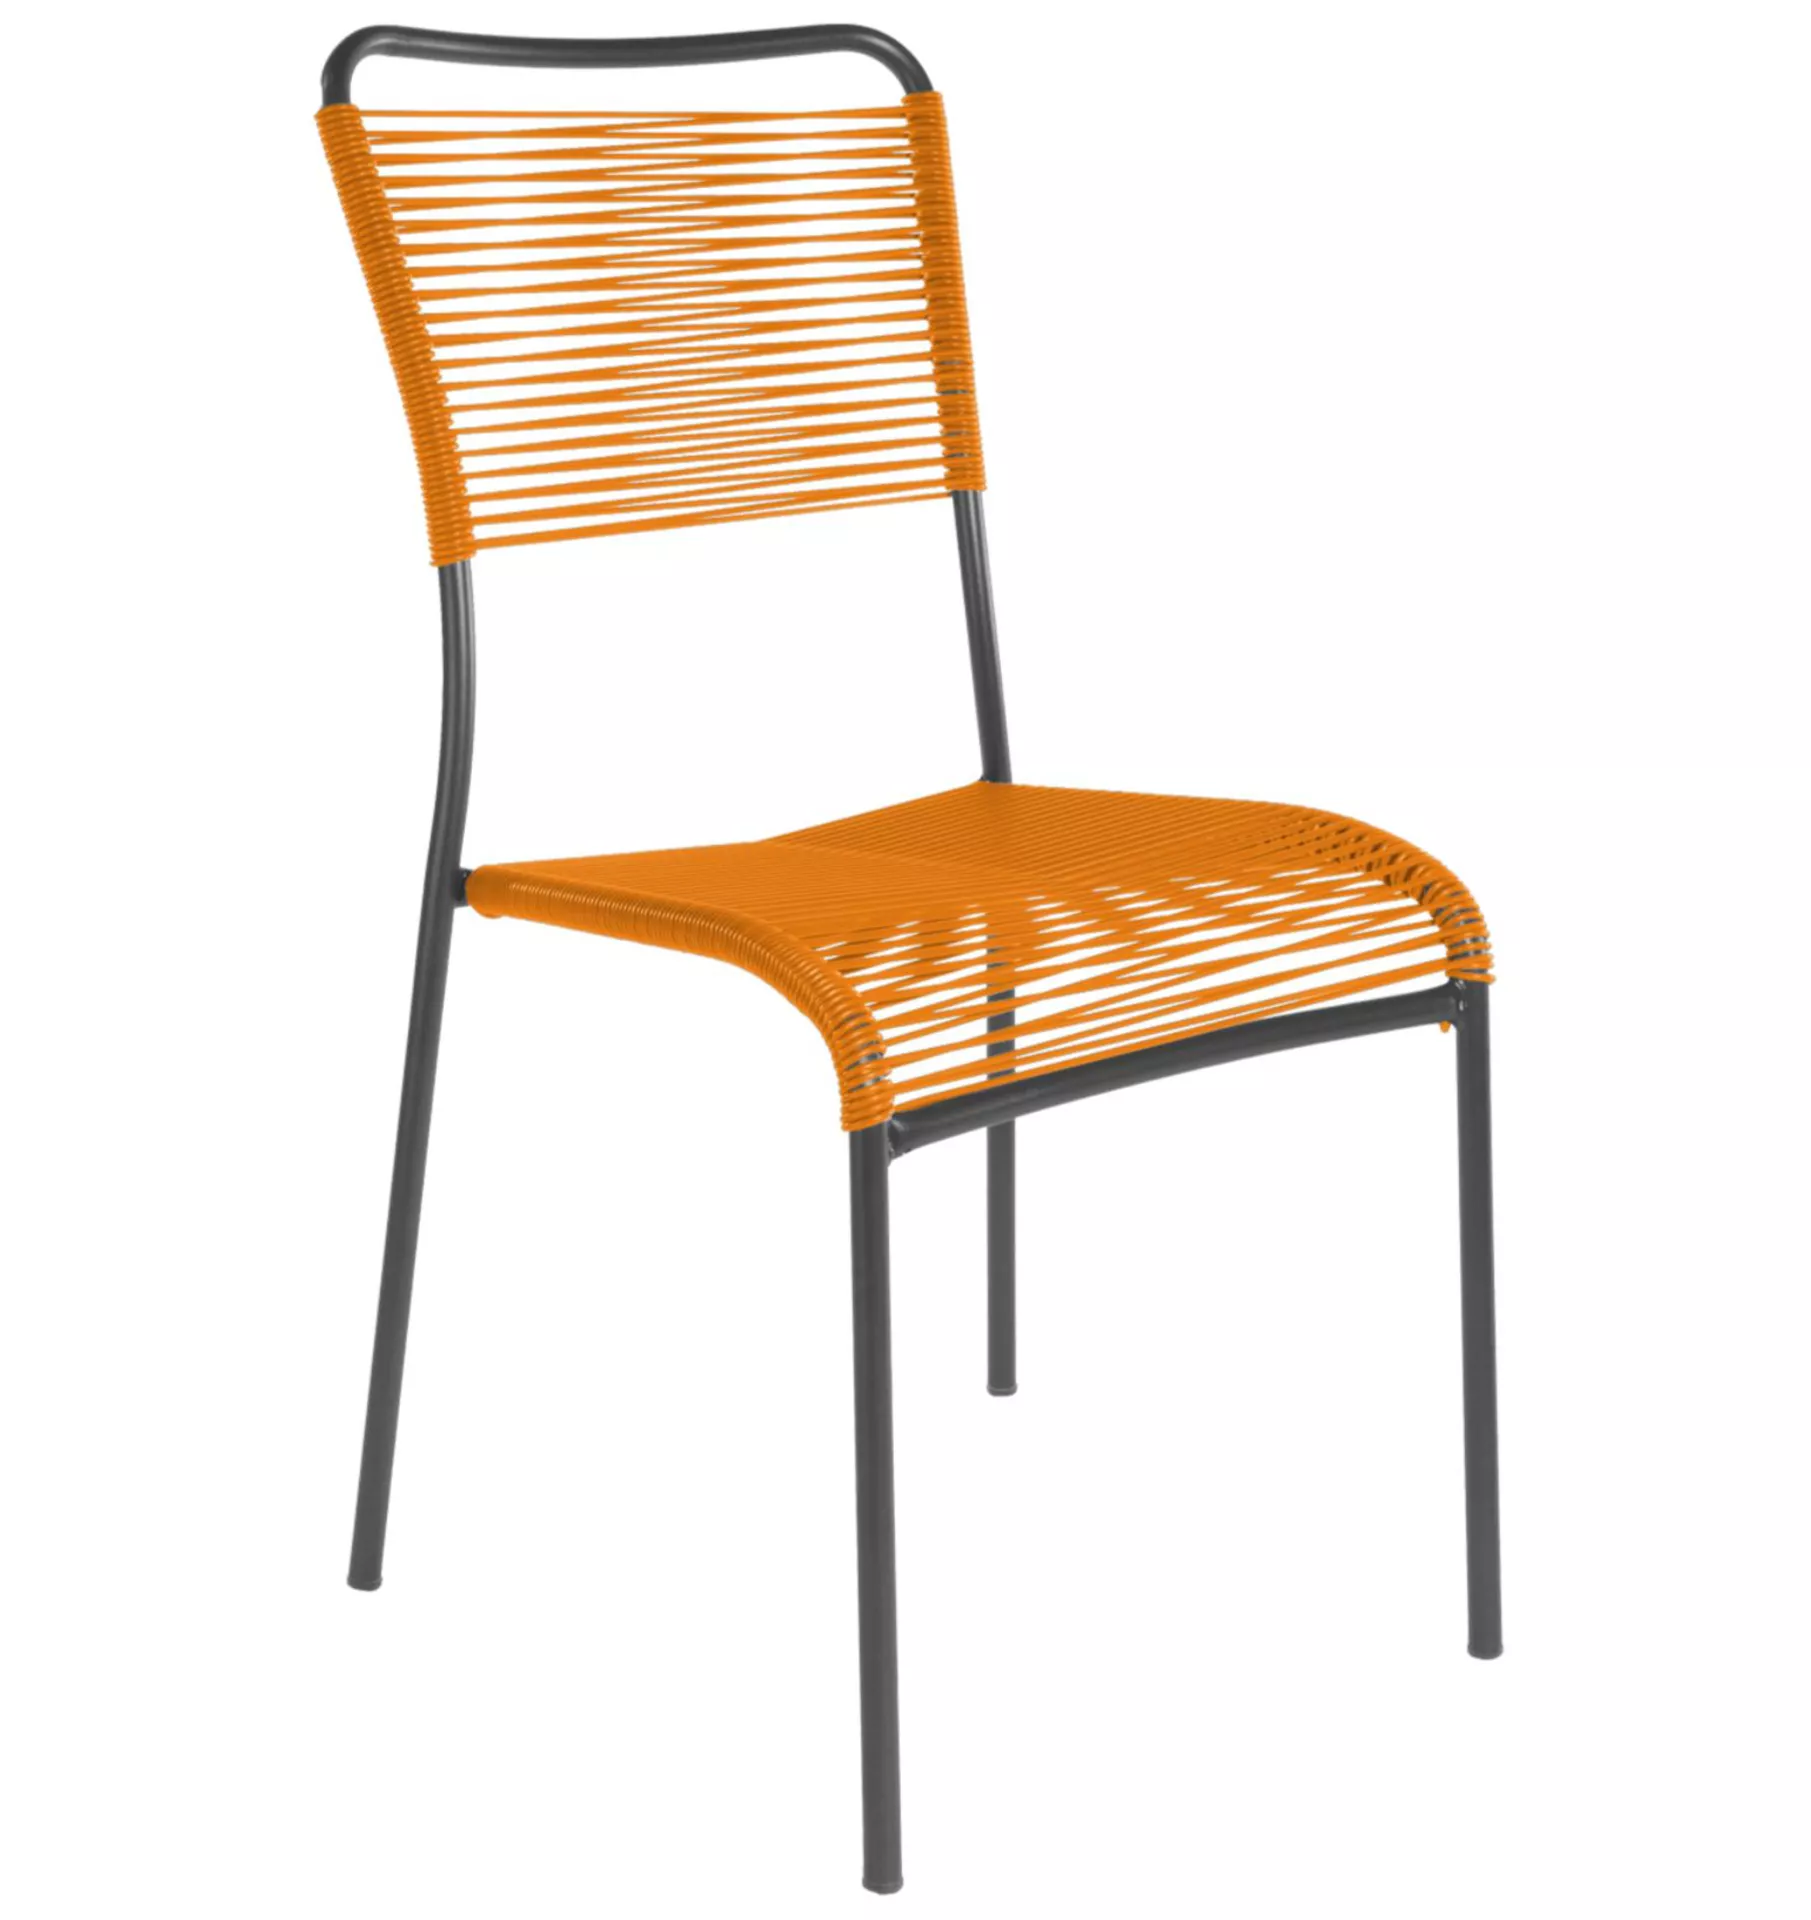 Spaghetti-Stuhl Mendrisio Schaffner / Farbe: Orange